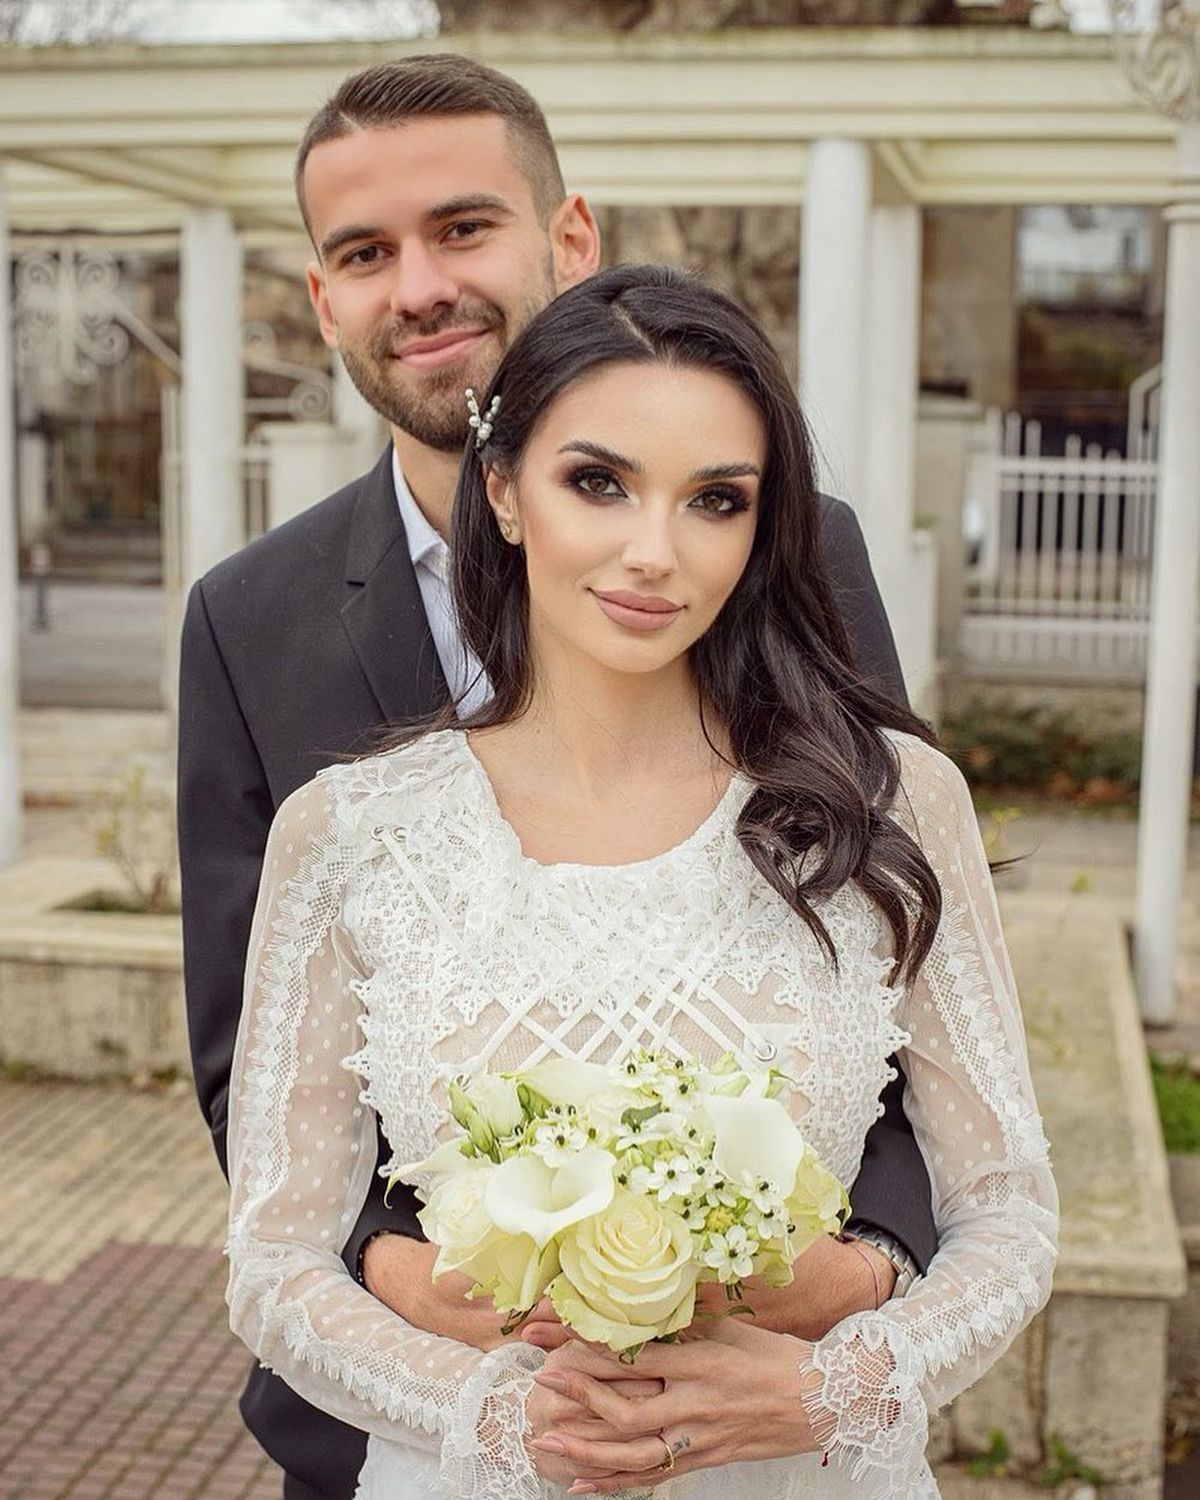 FOTO Bogdan Țîru s-a căsătorit cu o brunetă superbă » Imagini de senzație cu Marina